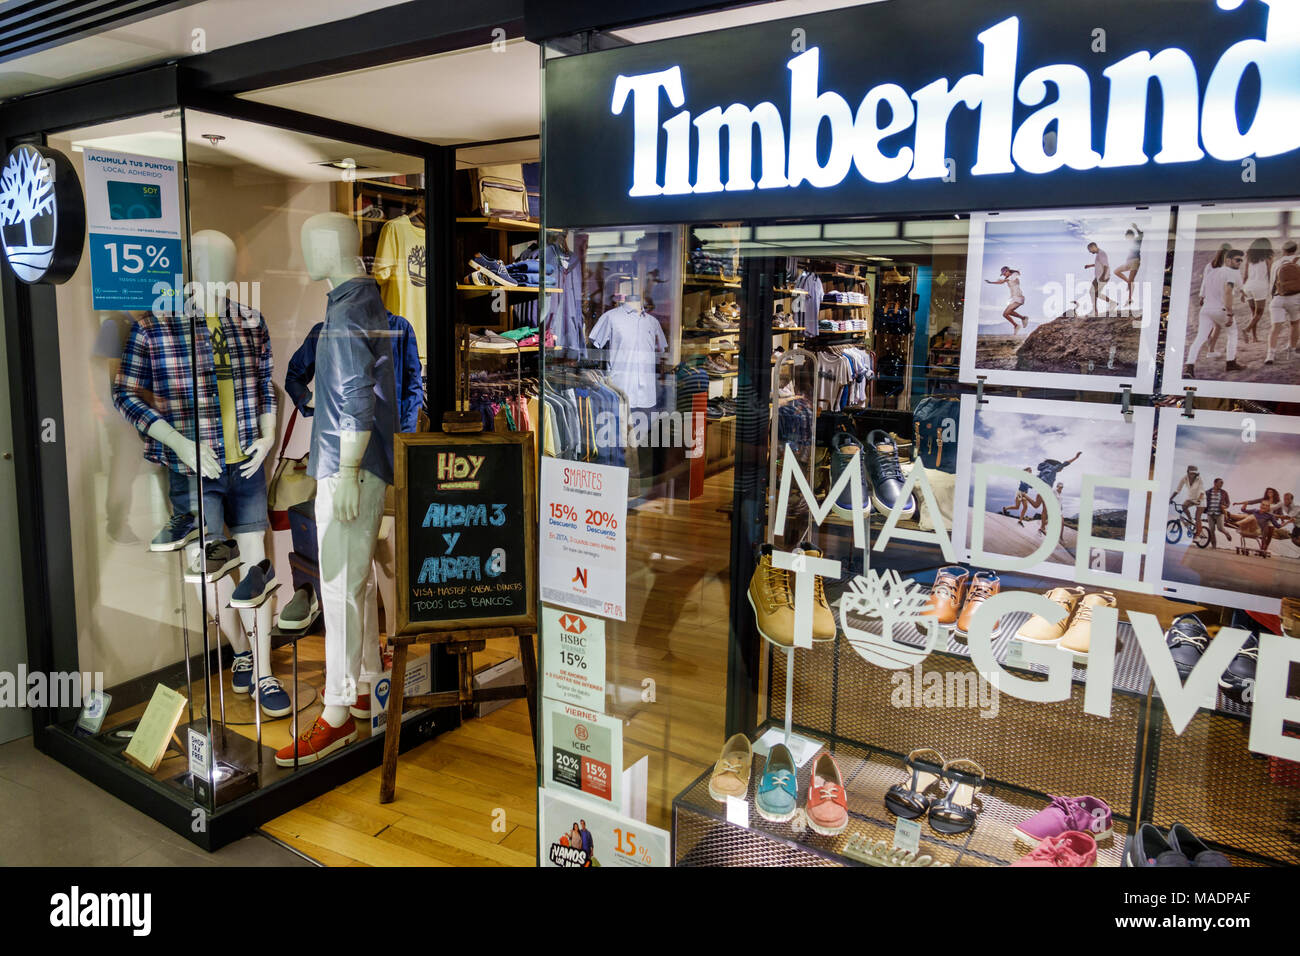 Timberland store immagini e fotografie stock ad alta risoluzione - Alamy